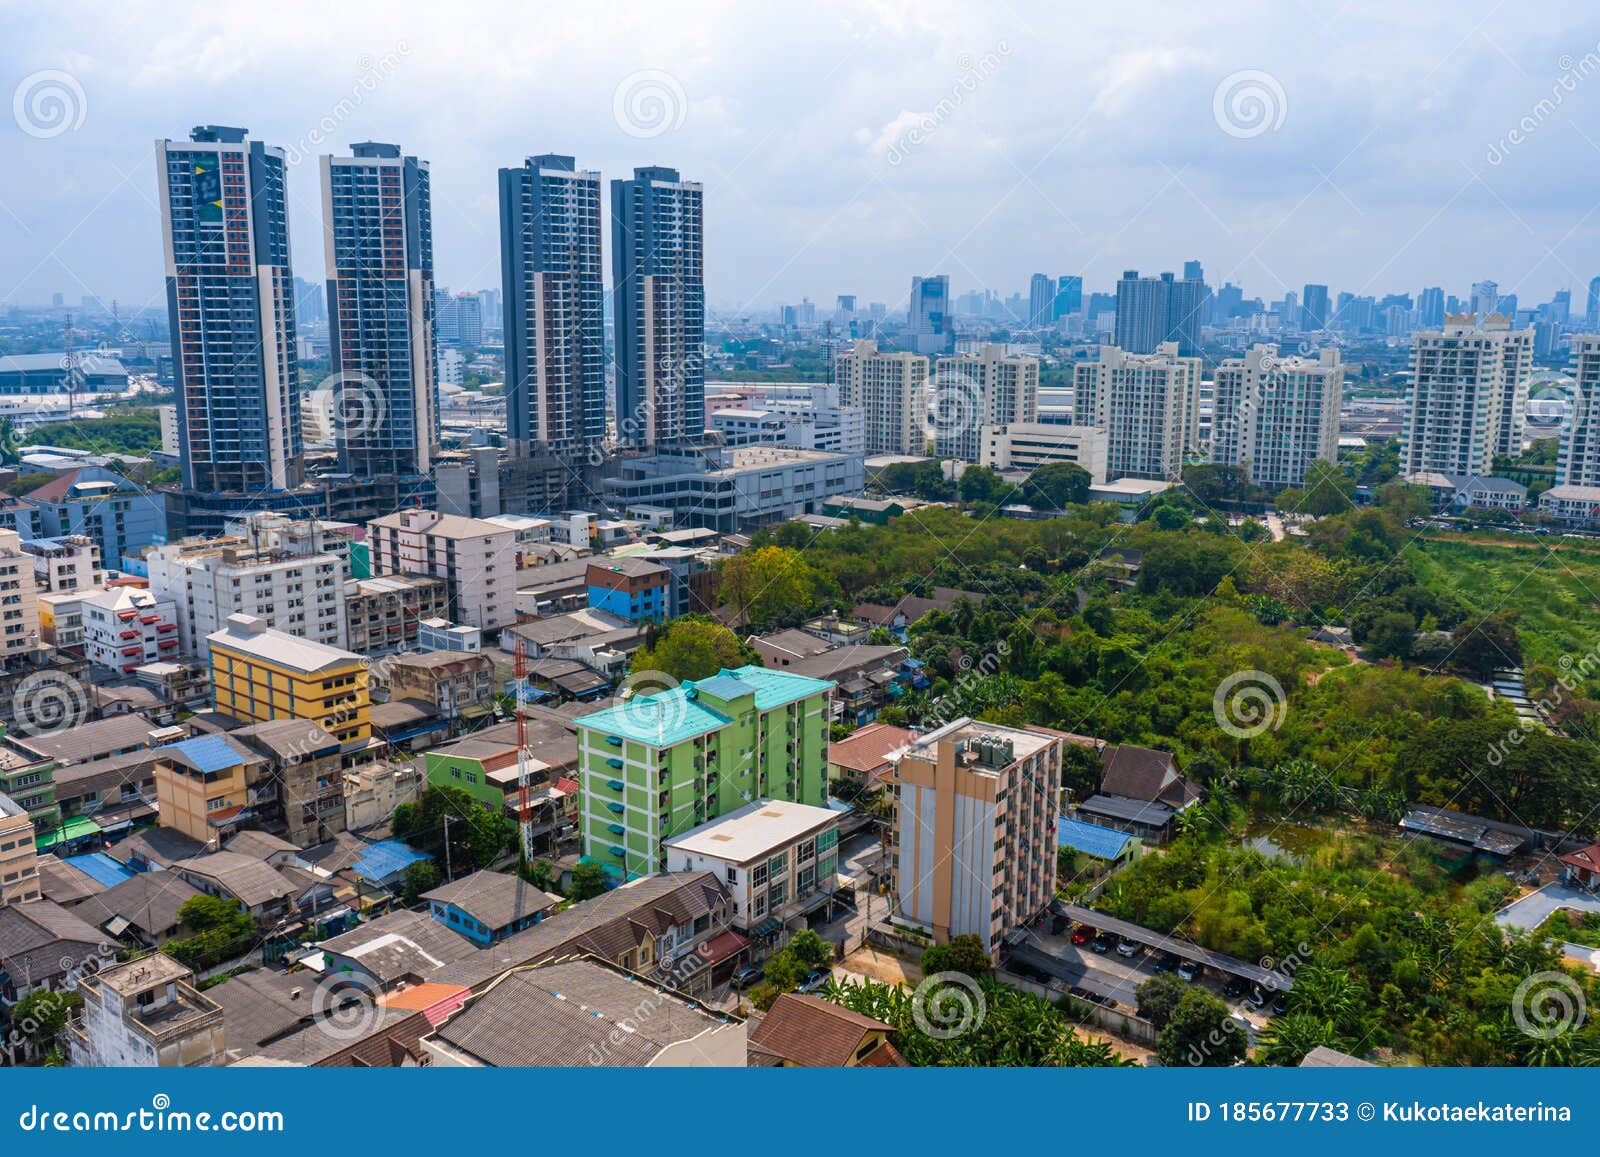 Вид с высокого этажа на улицах Бангкока. Высотные здания и крыши домов, небольших. Городской пейзаж Редакционное Стоковое Фото - изображение насчитывающей строя, над: 185677733